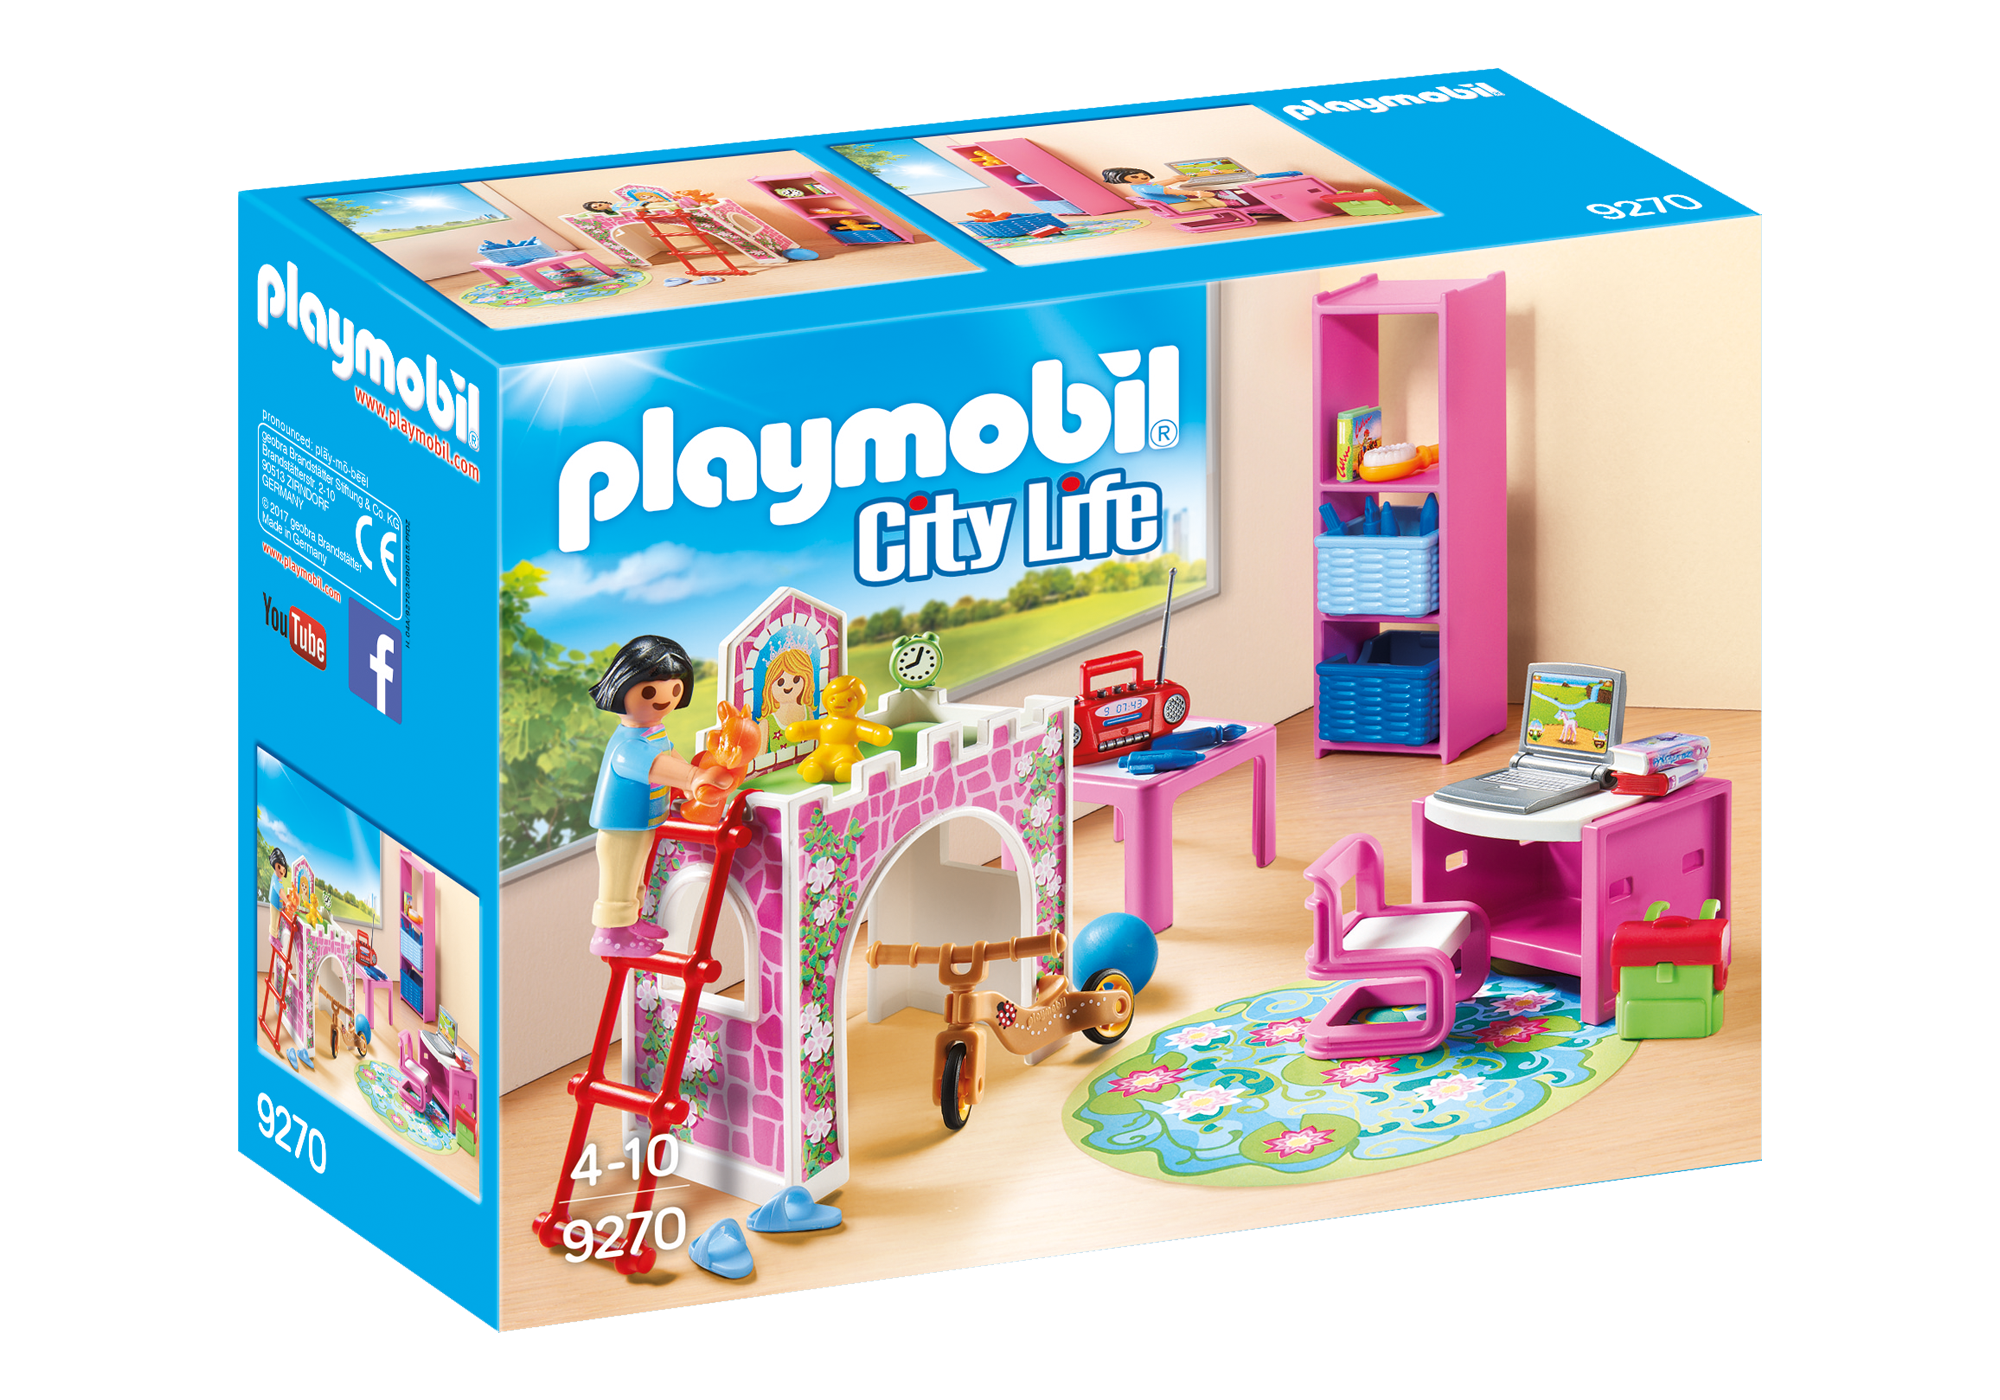 playmobil girl sets